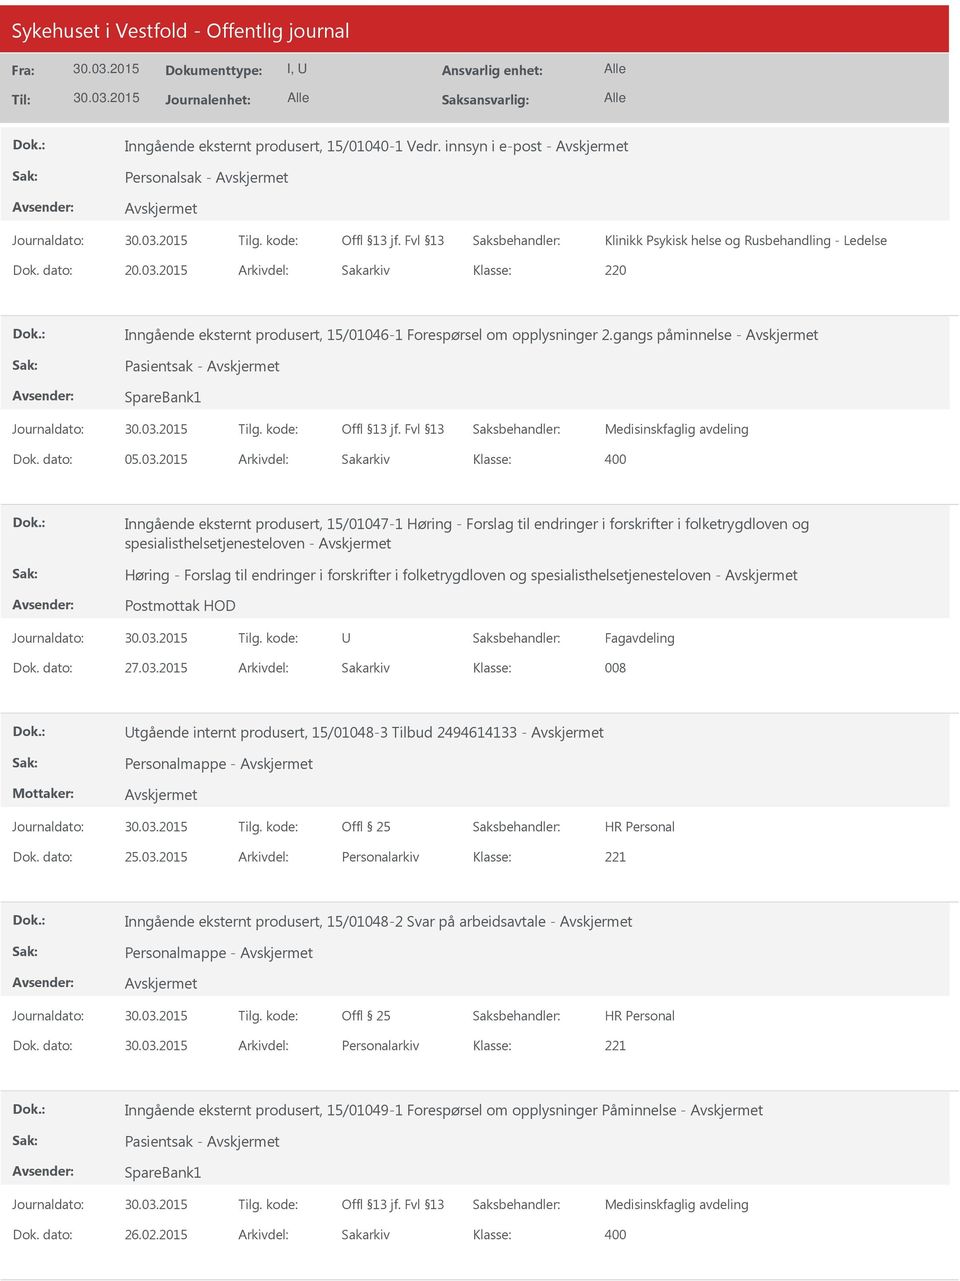 2015 Arkivdel: Sakarkiv Inngående eksternt produsert, 15/01047-1 Høring - Forslag til endringer i forskrifter i folketrygdloven og spesialisthelsetjenesteloven - Høring - Forslag til endringer i